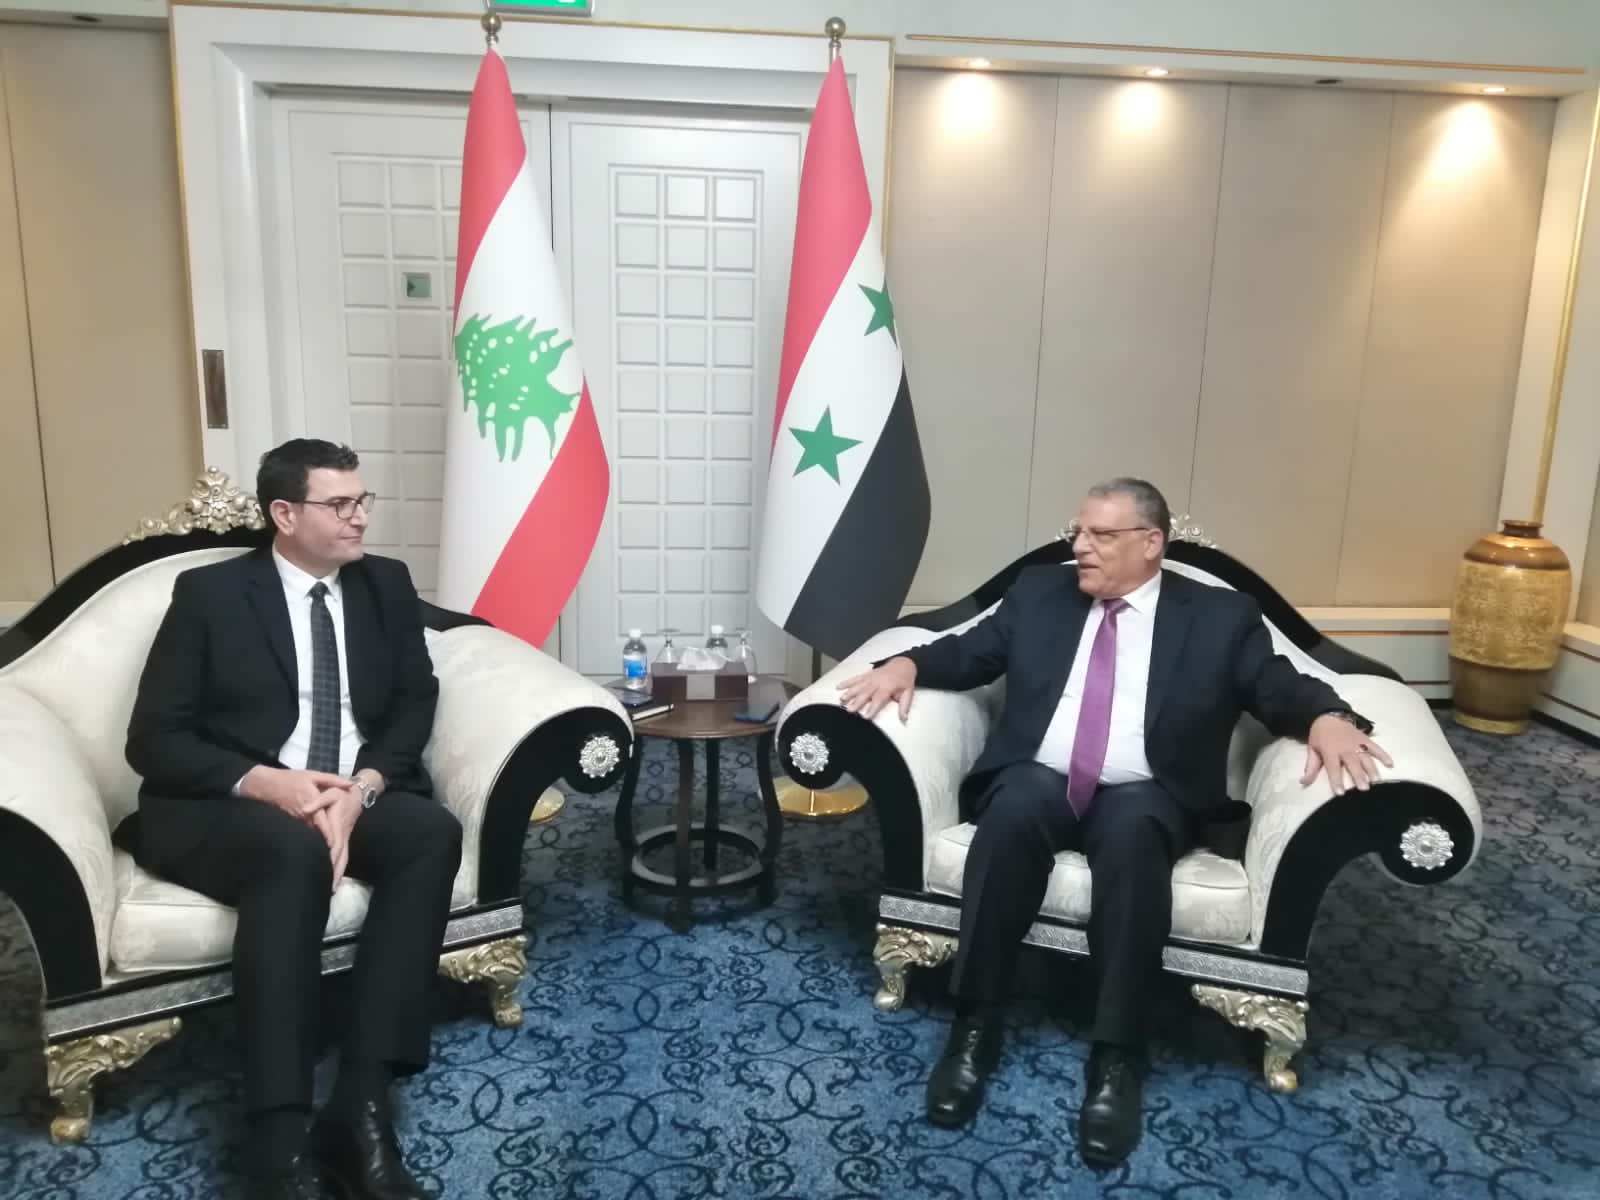 الحاج حسن يلتقي وزير الزراعة السوري في بغداد ضمن فعاليات مؤتمر منظمة الأغذية والزراعة الإقليمي للشرق الأدنى الذي يعقد في بغداد